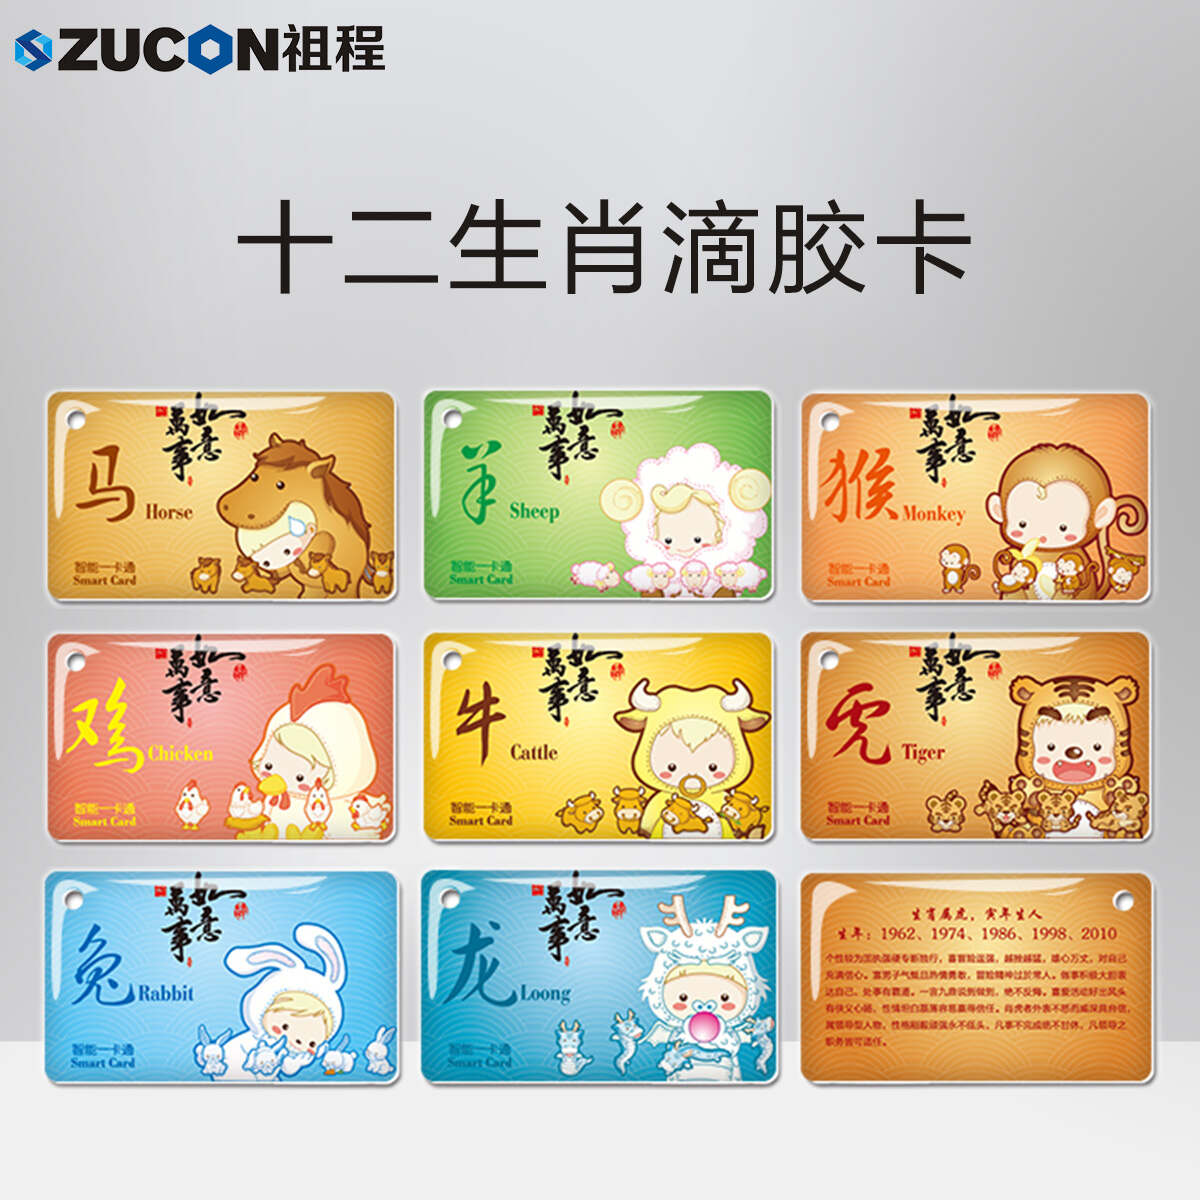 ZUCON祖程生肖卡滴胶感应卡扣门禁系统考勤卡钥匙挂扣卡ID、IC小卡